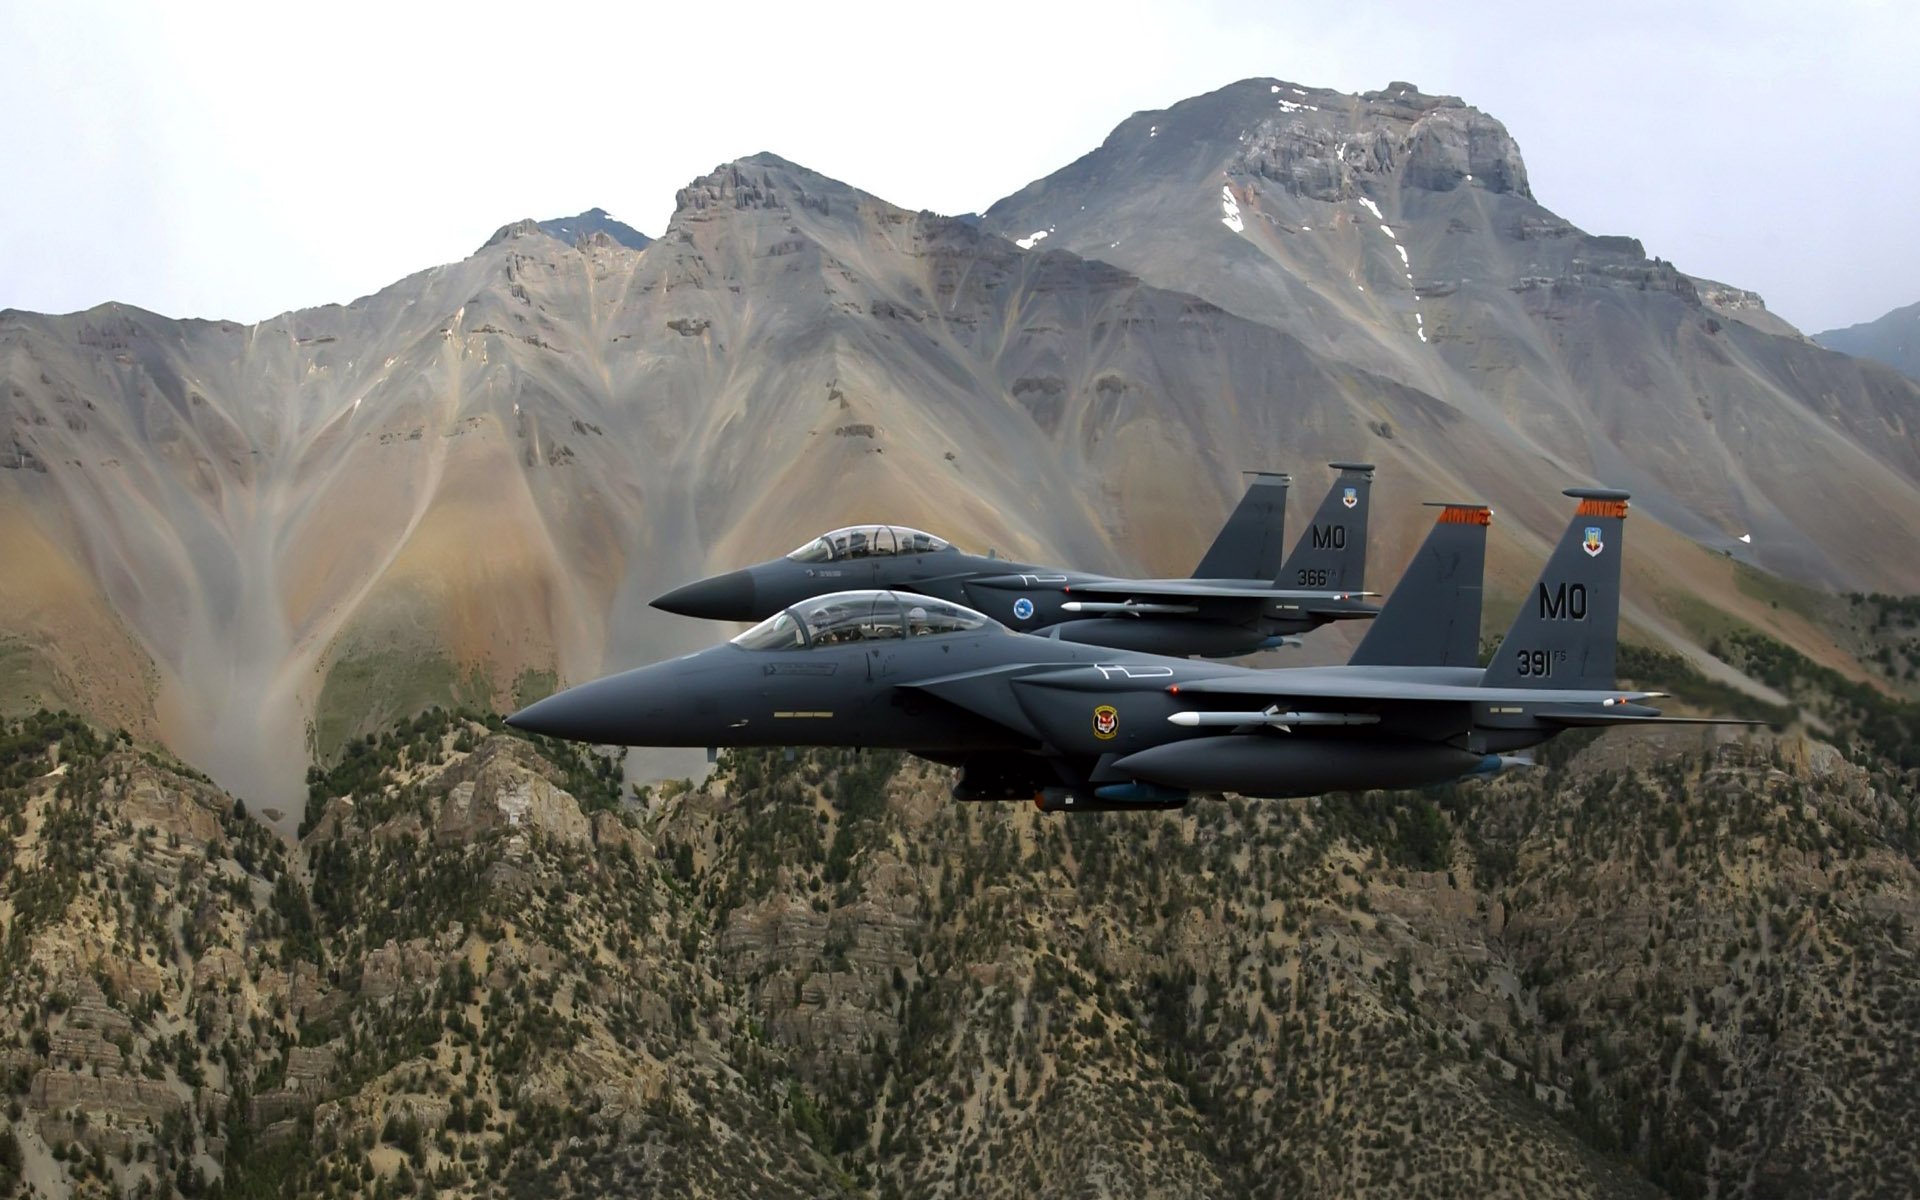 военные самолеты мира фото